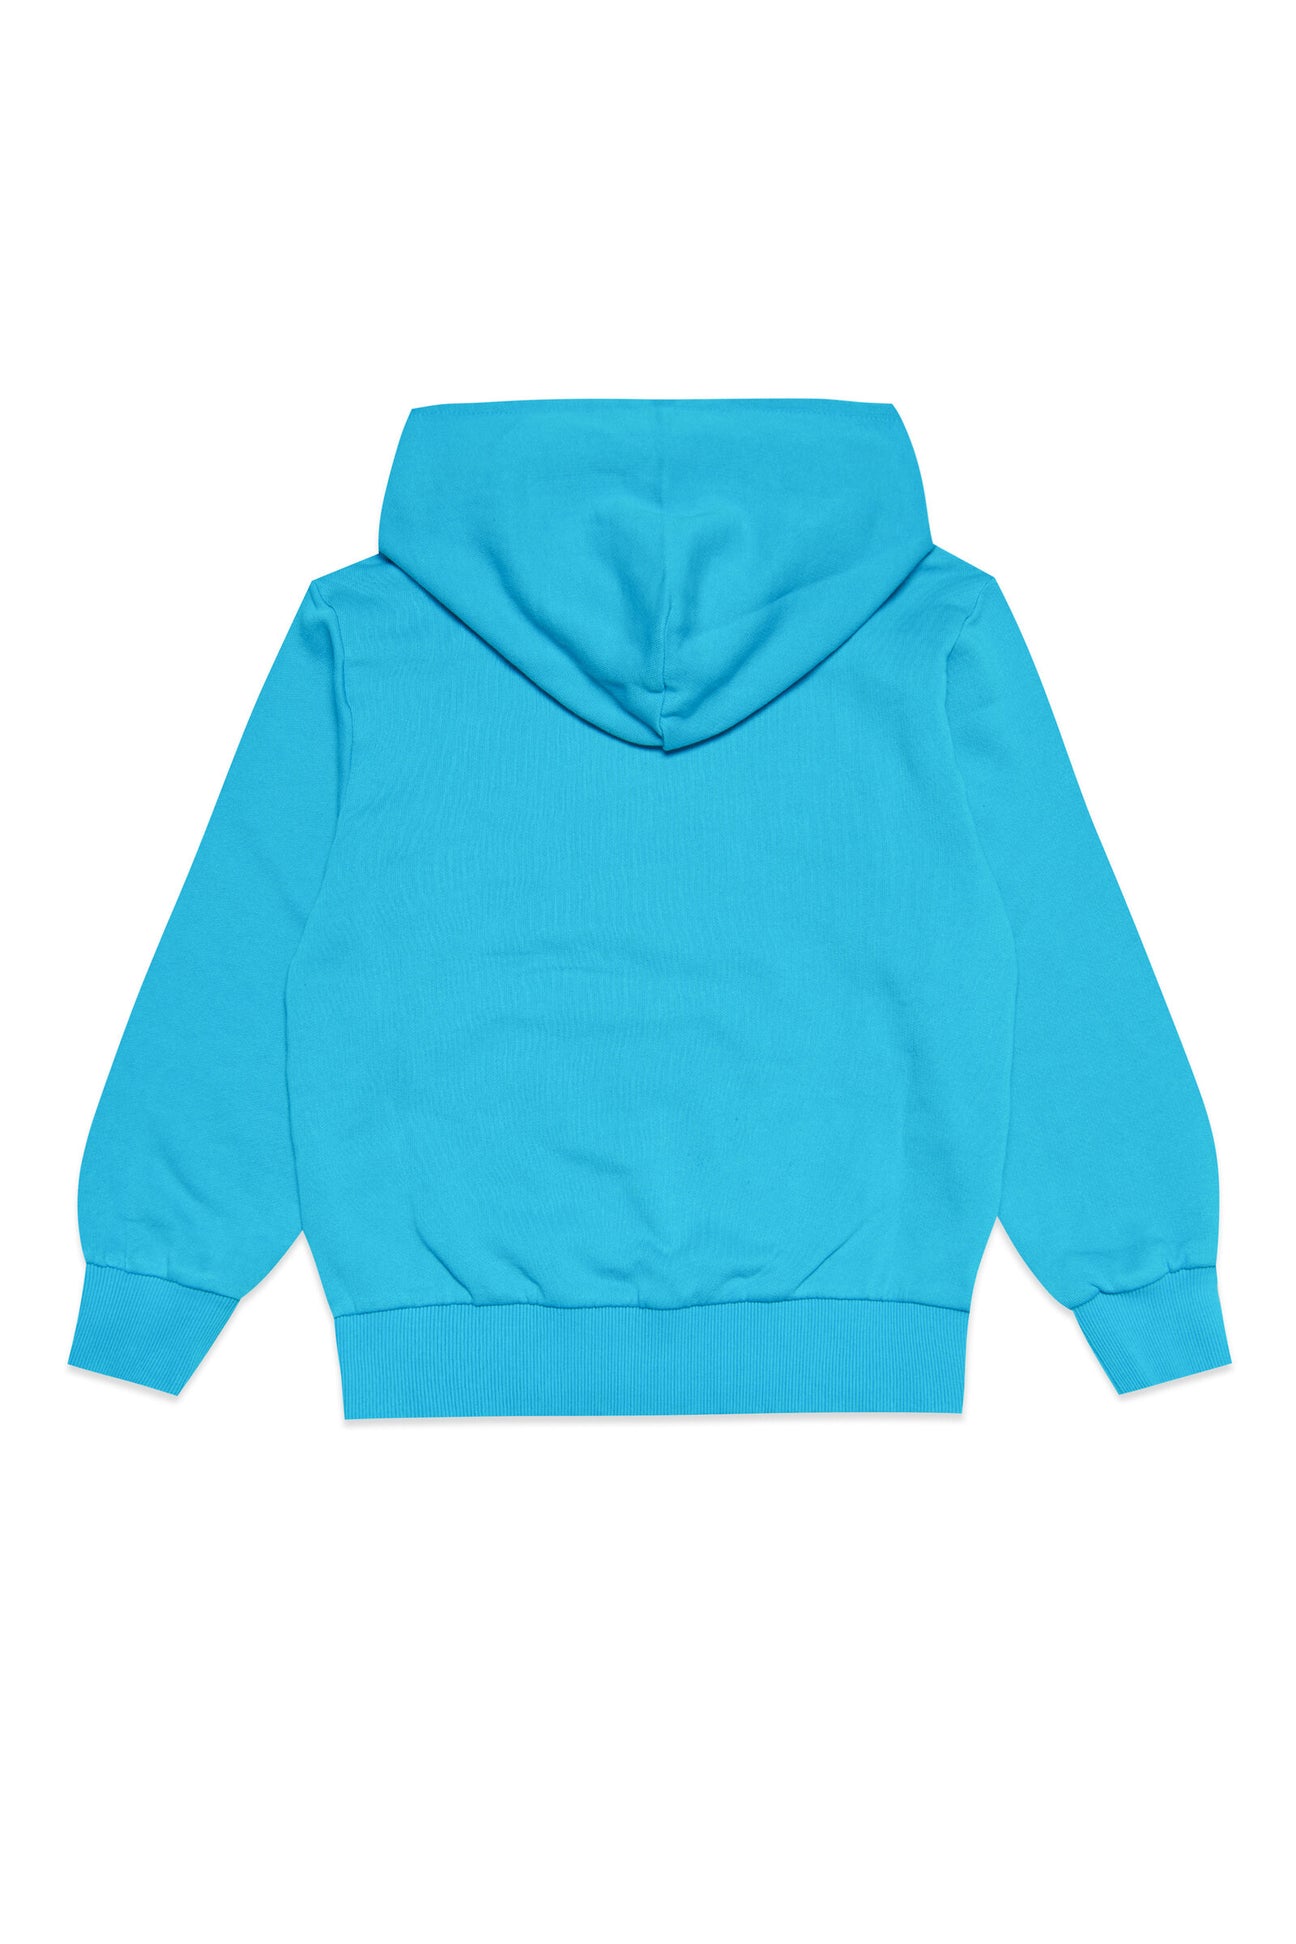 Fluo blue cotton hooded sweatshirt Fluo blue cotton hooded sweatshirt